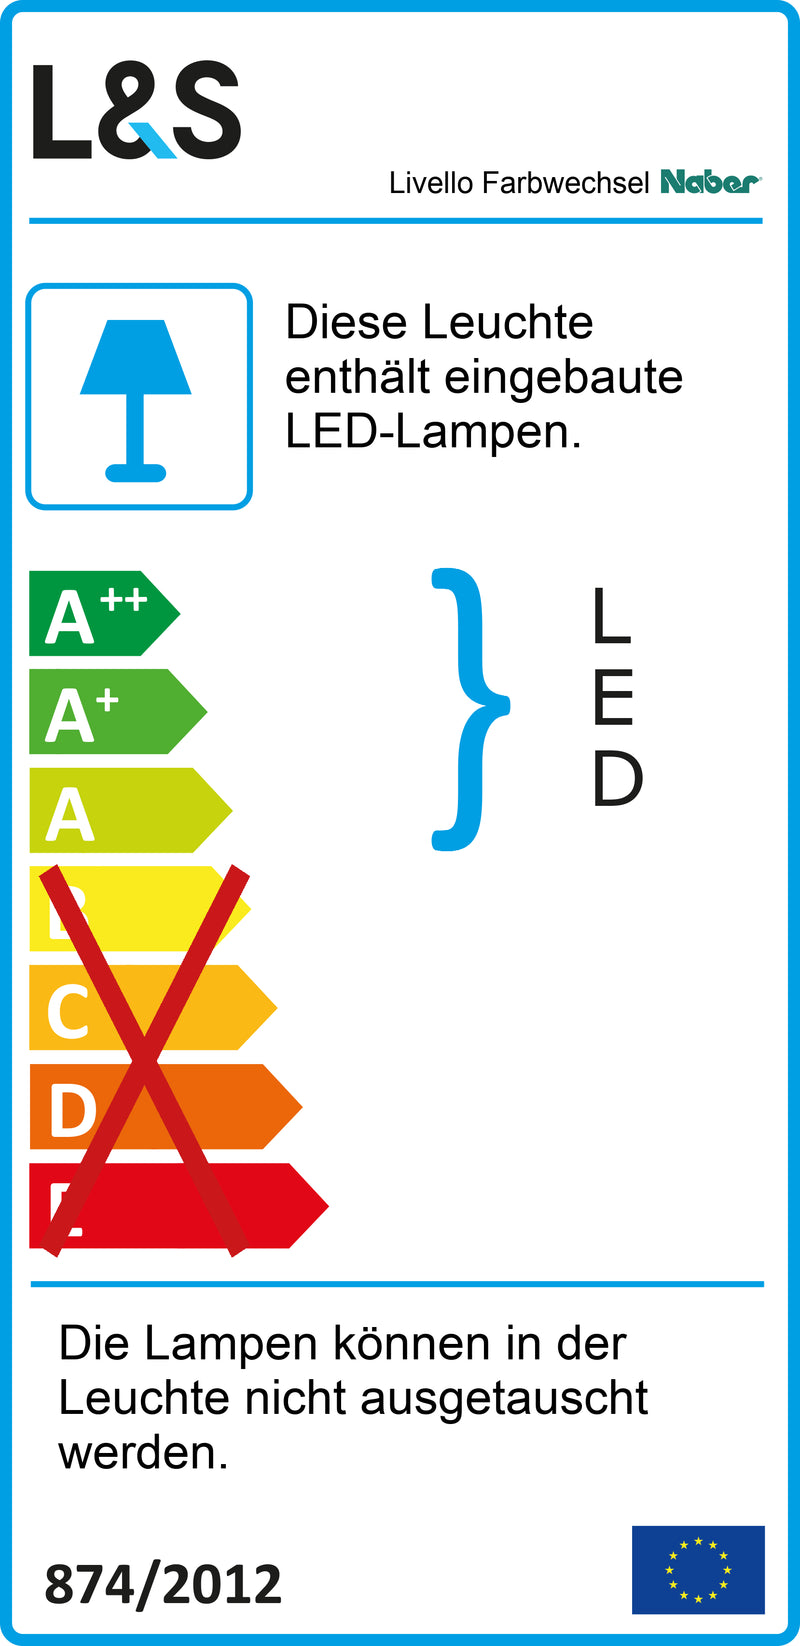 E-Label zu Zeichnung zu Livello Farbwechsel LED als Variante Set-3, alufarbig von Naber GmbH in der Kategorie Lichttechnik in Österreich auf conceptshop.at